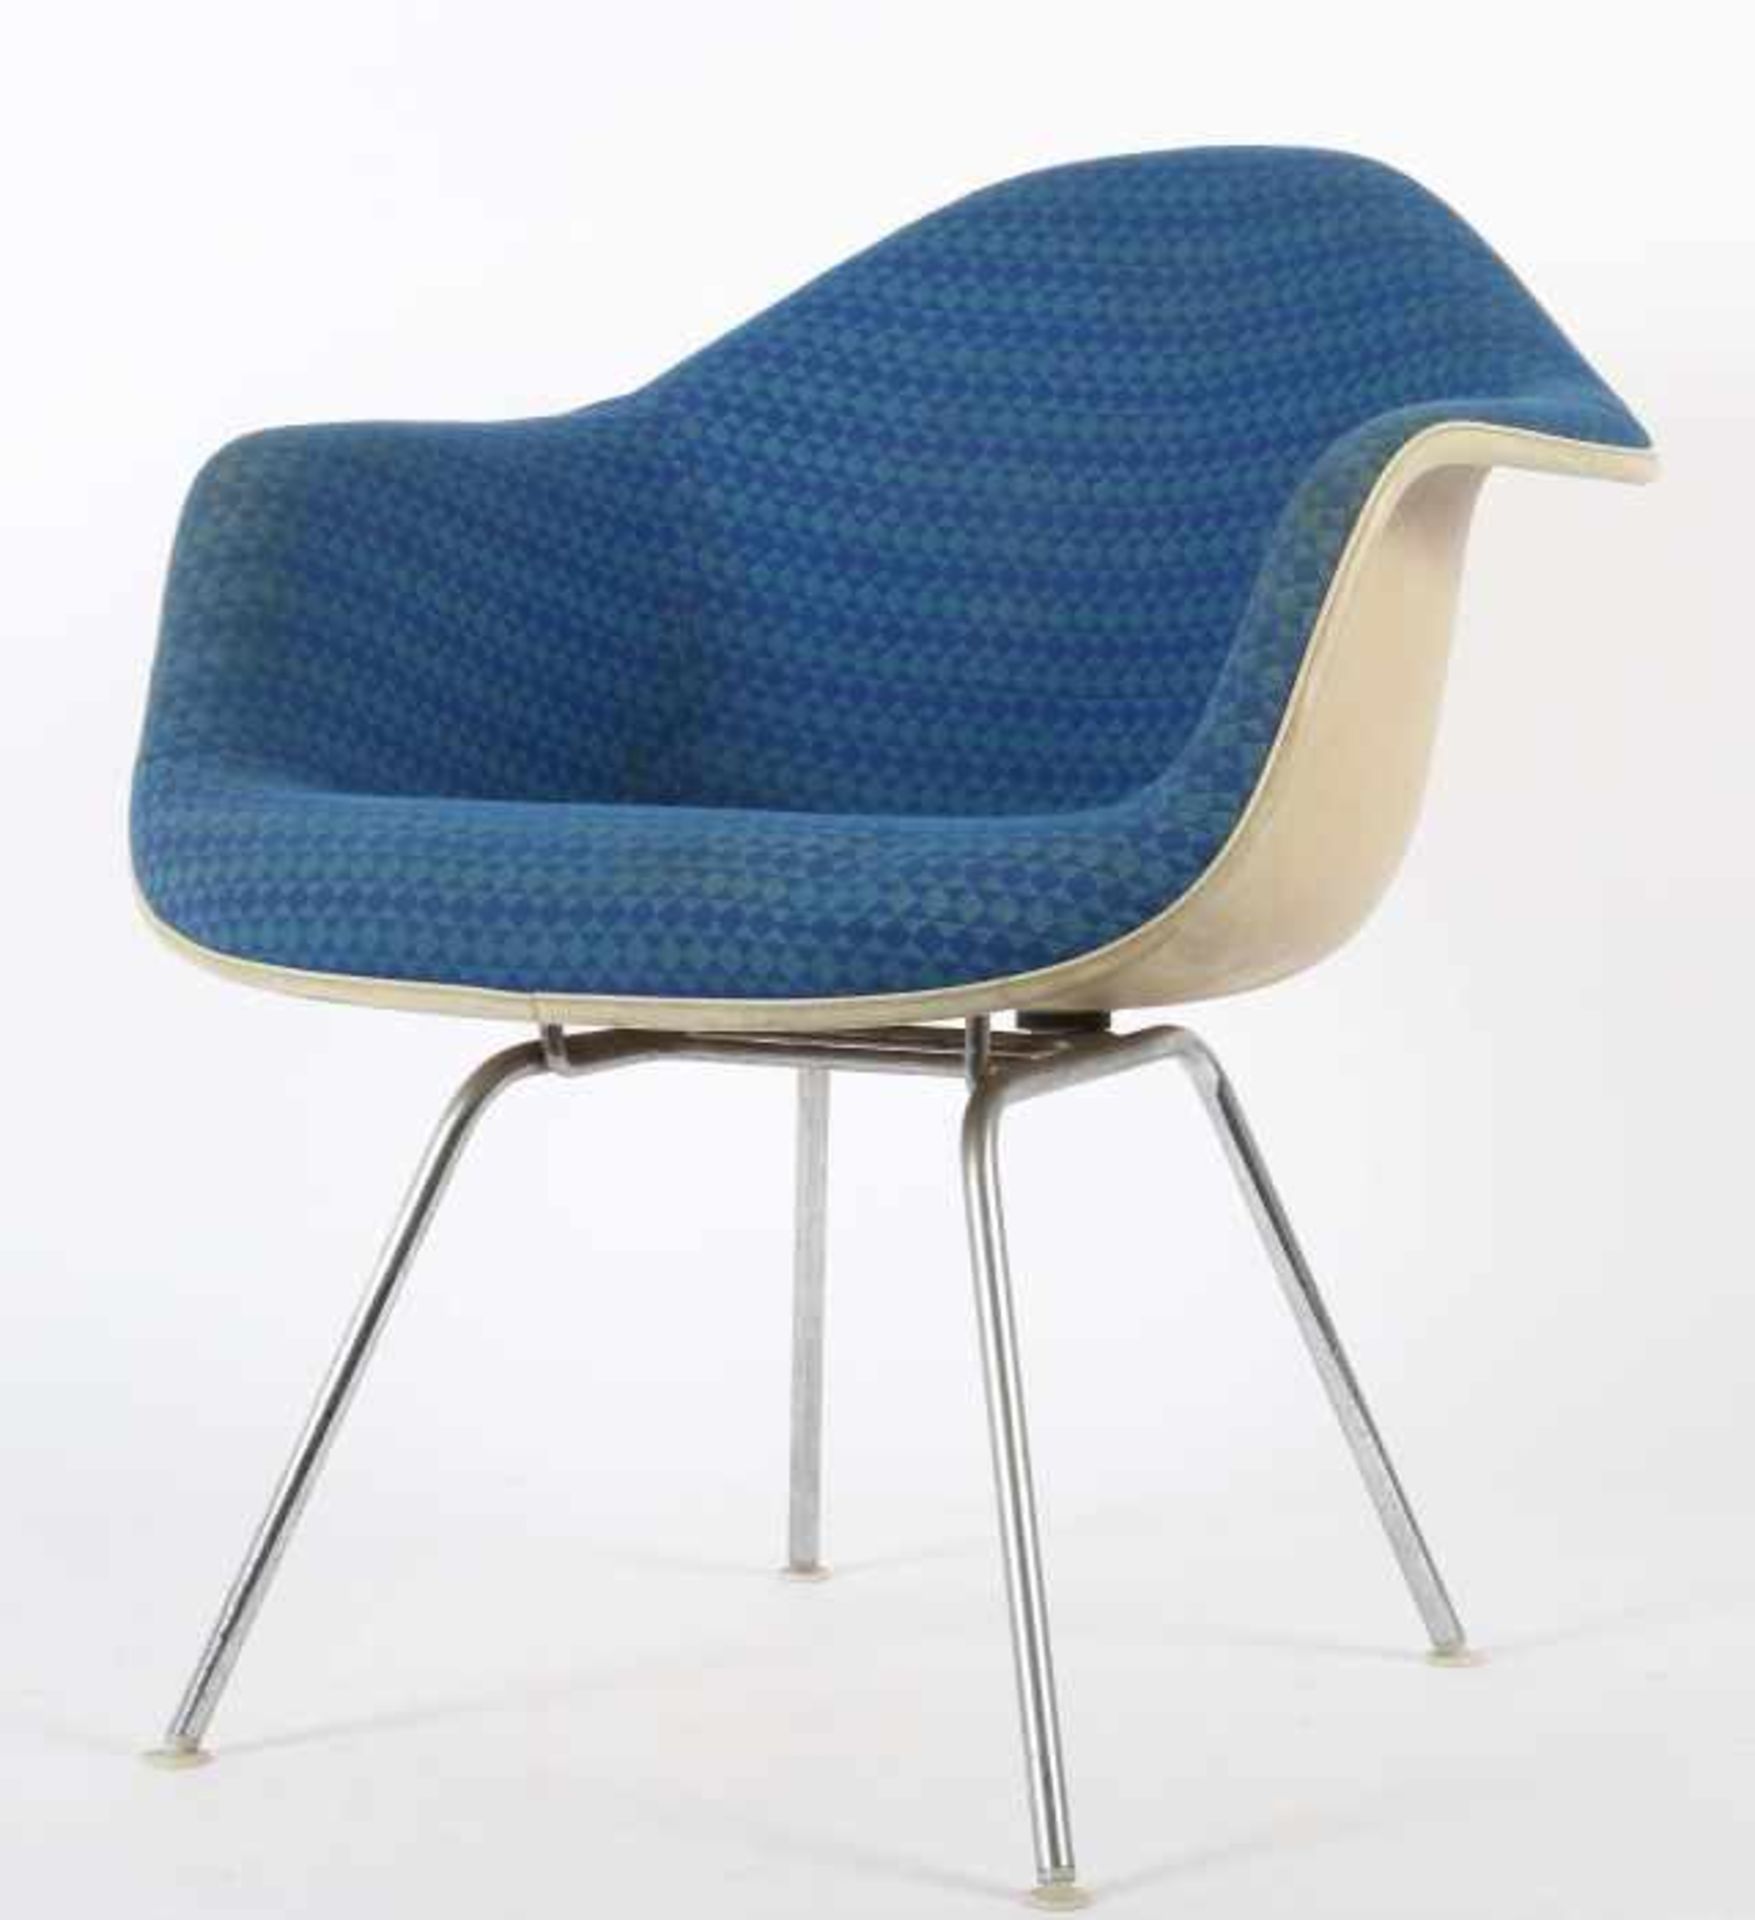 Eames, Ray & Charles Armlehnstuhl "Dax", Entwurf: 1950er Jahre, Ausführung: Herman Miller, 1970er - Bild 2 aus 2